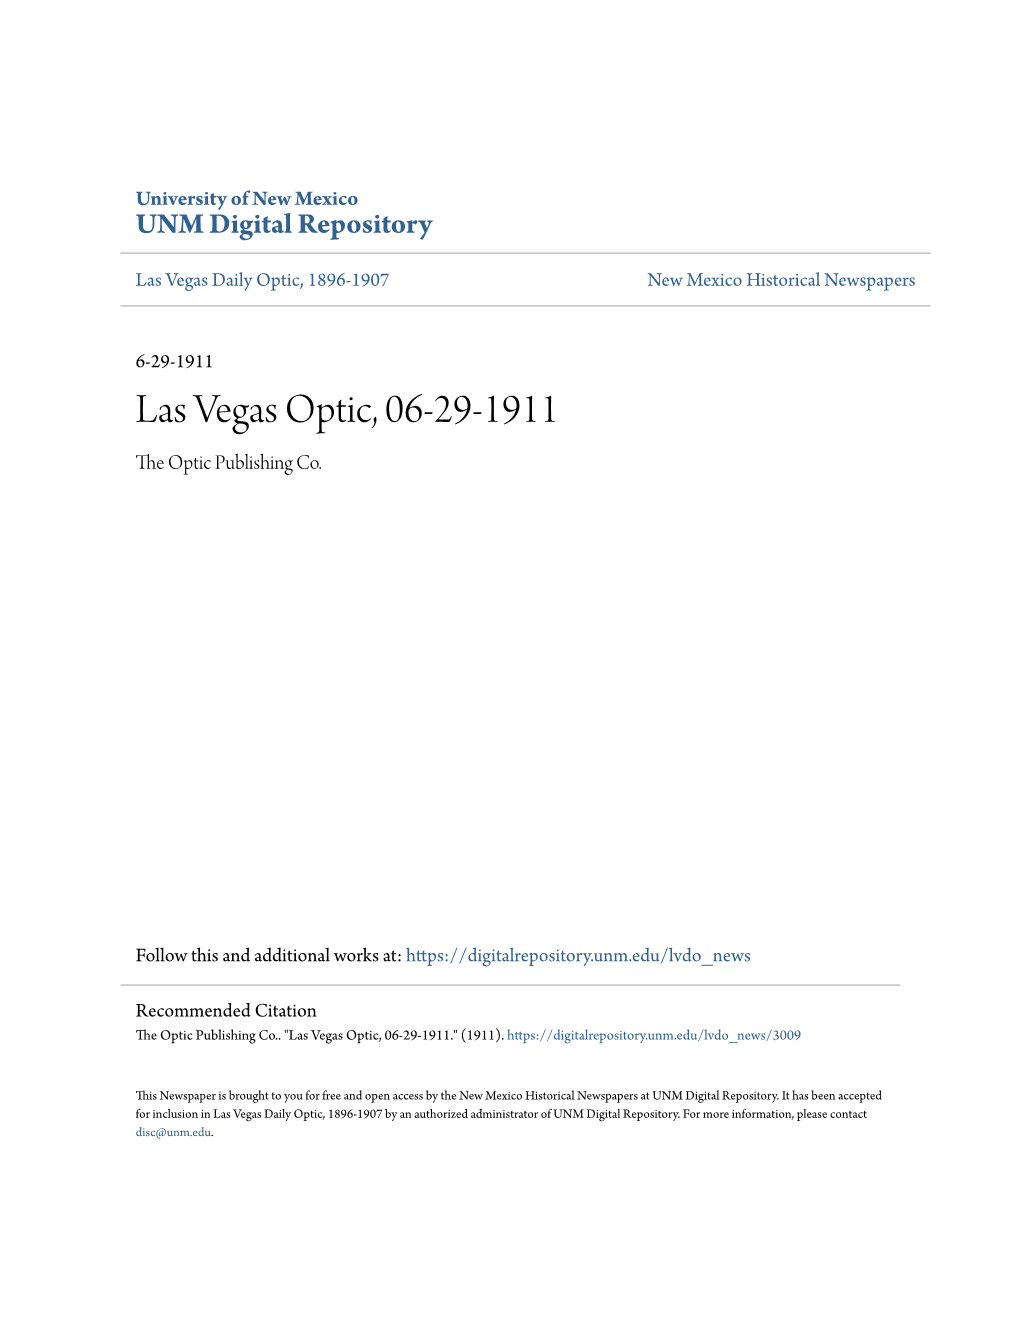 Las Vegas Optic, 06-29-1911 the Optic Publishing Co